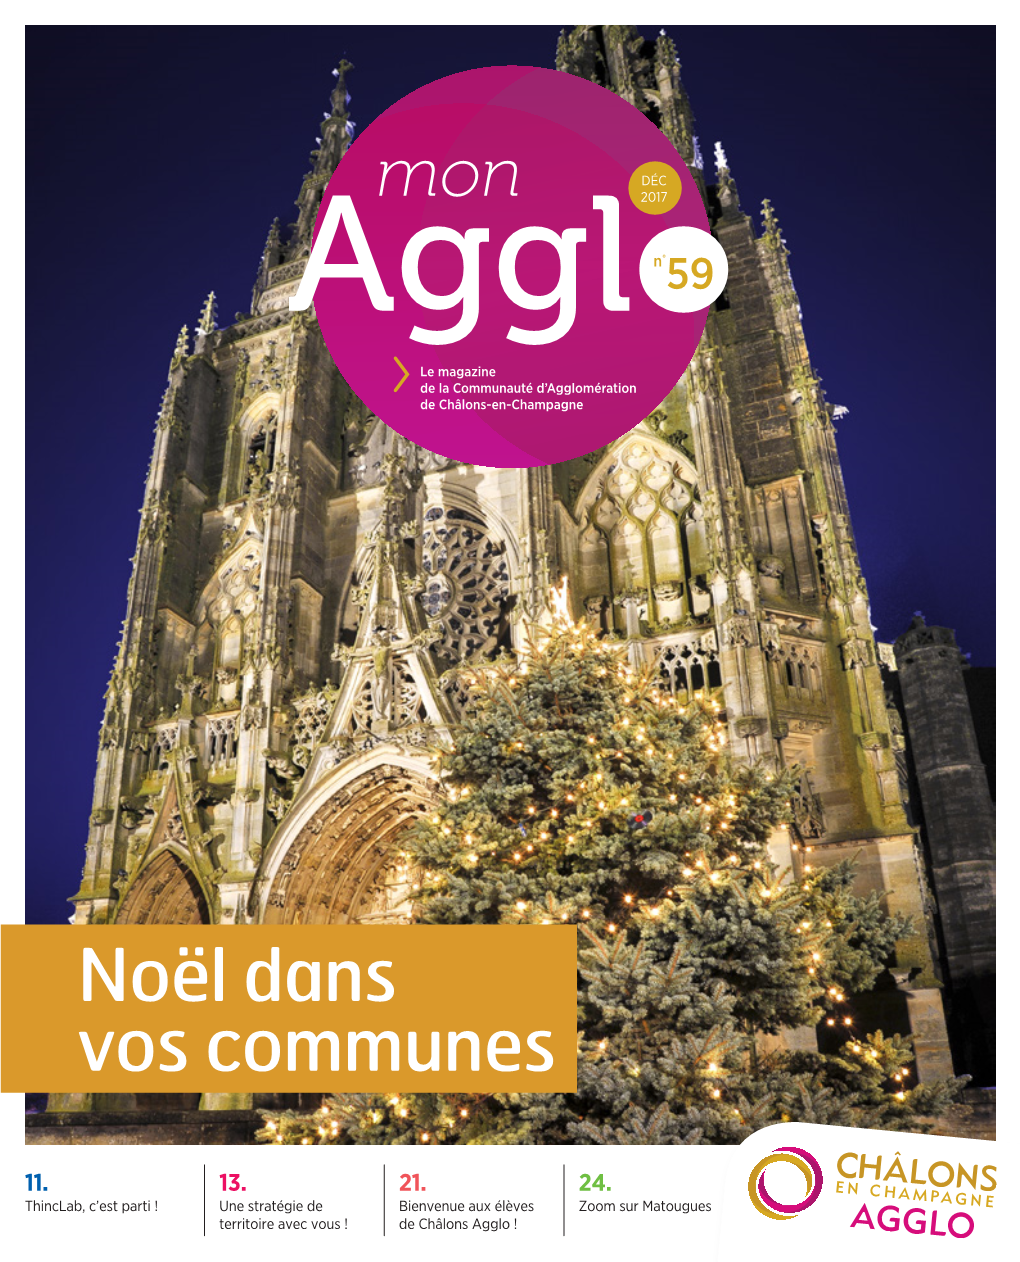 Mon Agglo Magazine Chalons-Agglo.Fr RETOUR EN IMAGES